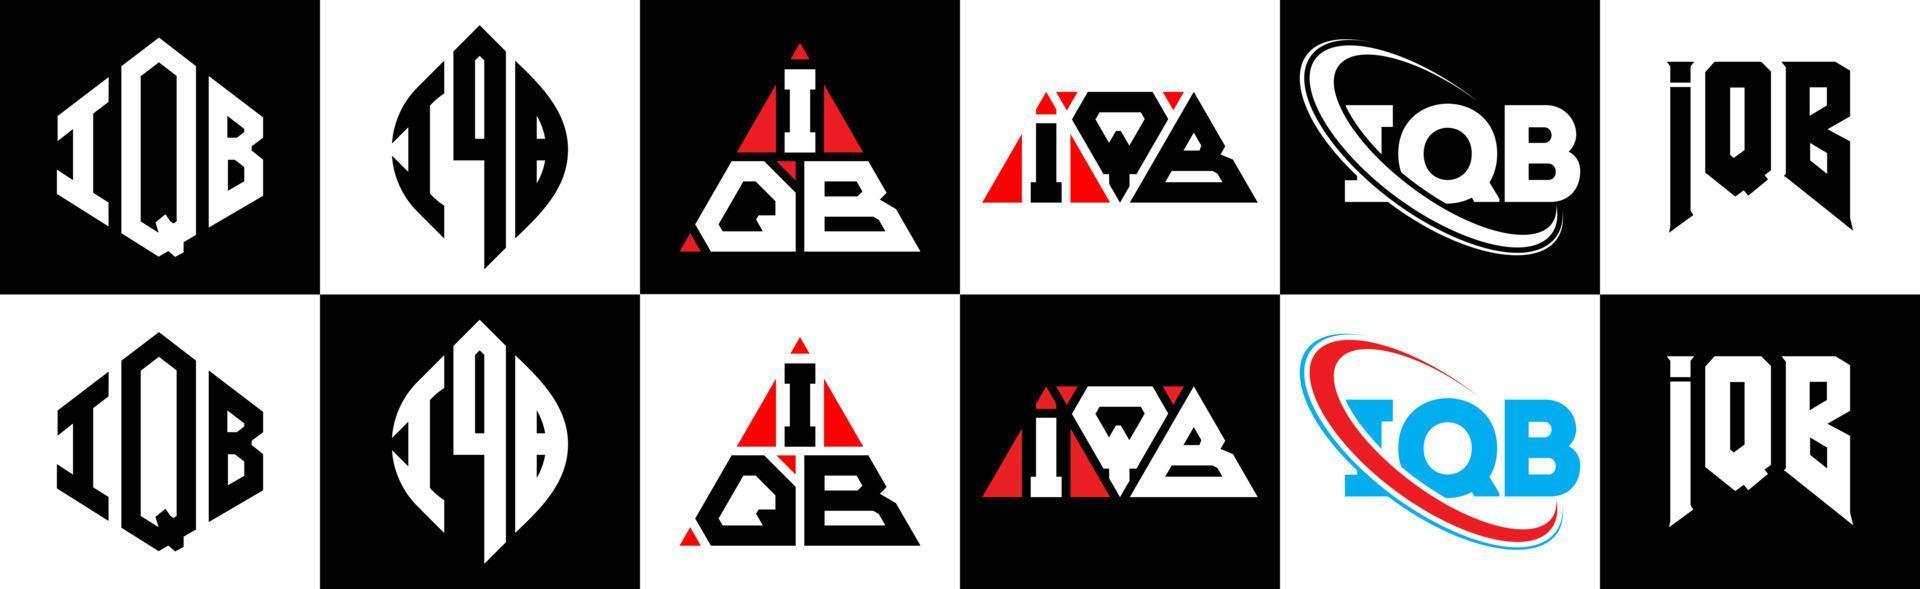 création de logo de lettre iqb en six styles. polygone iqb, cercle, triangle, hexagone, style plat et simple avec logo de lettre de variation de couleur noir et blanc dans un plan de travail. logo minimaliste et classique iqb vecteur